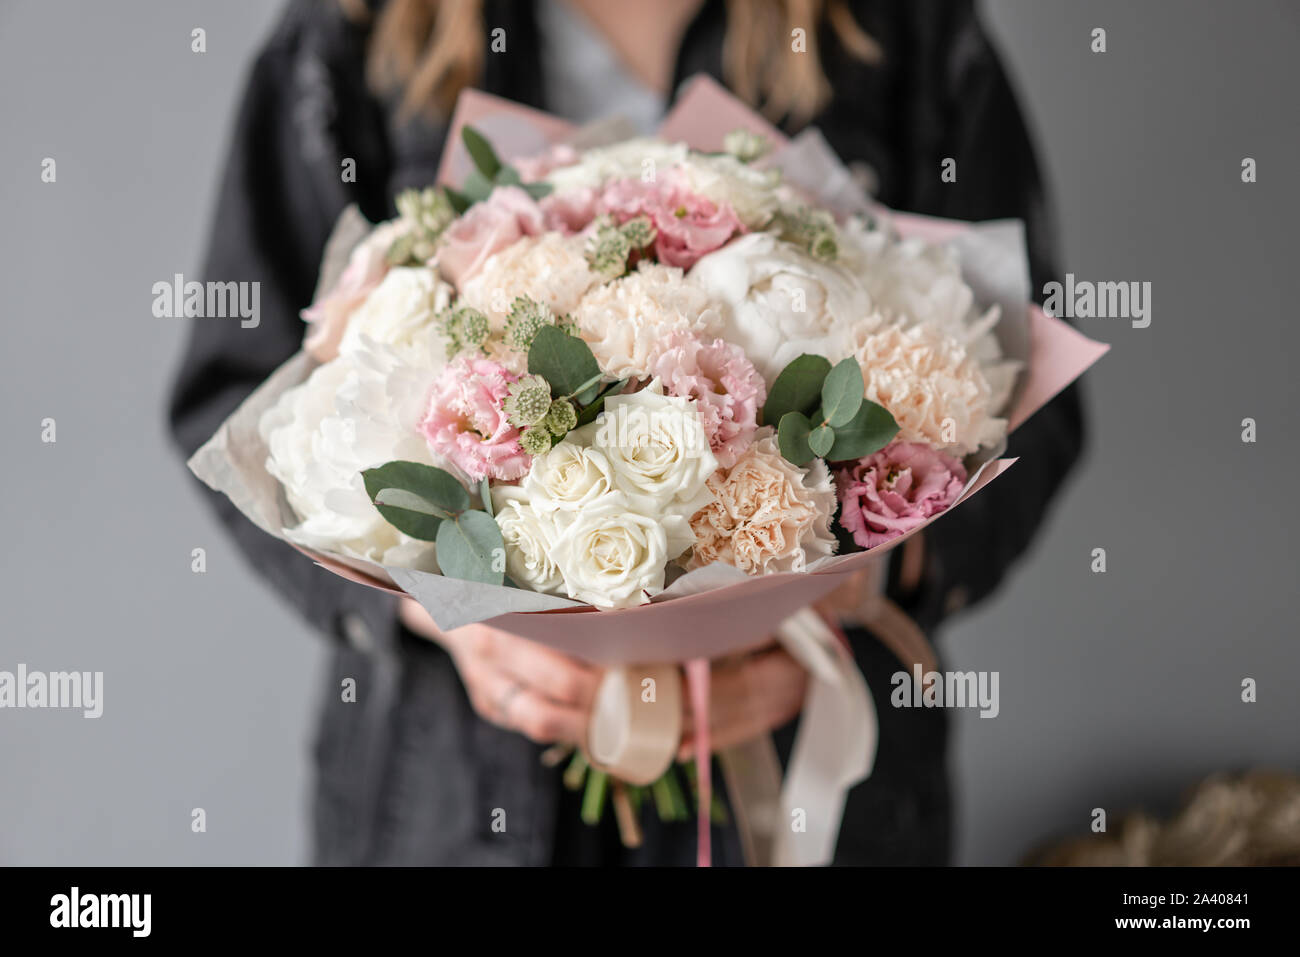 Magnifique petit bouquet de fleurs en main femme. Boutique de fleurs concept. Livraison de fleurs. Pivoines blanches Banque D'Images